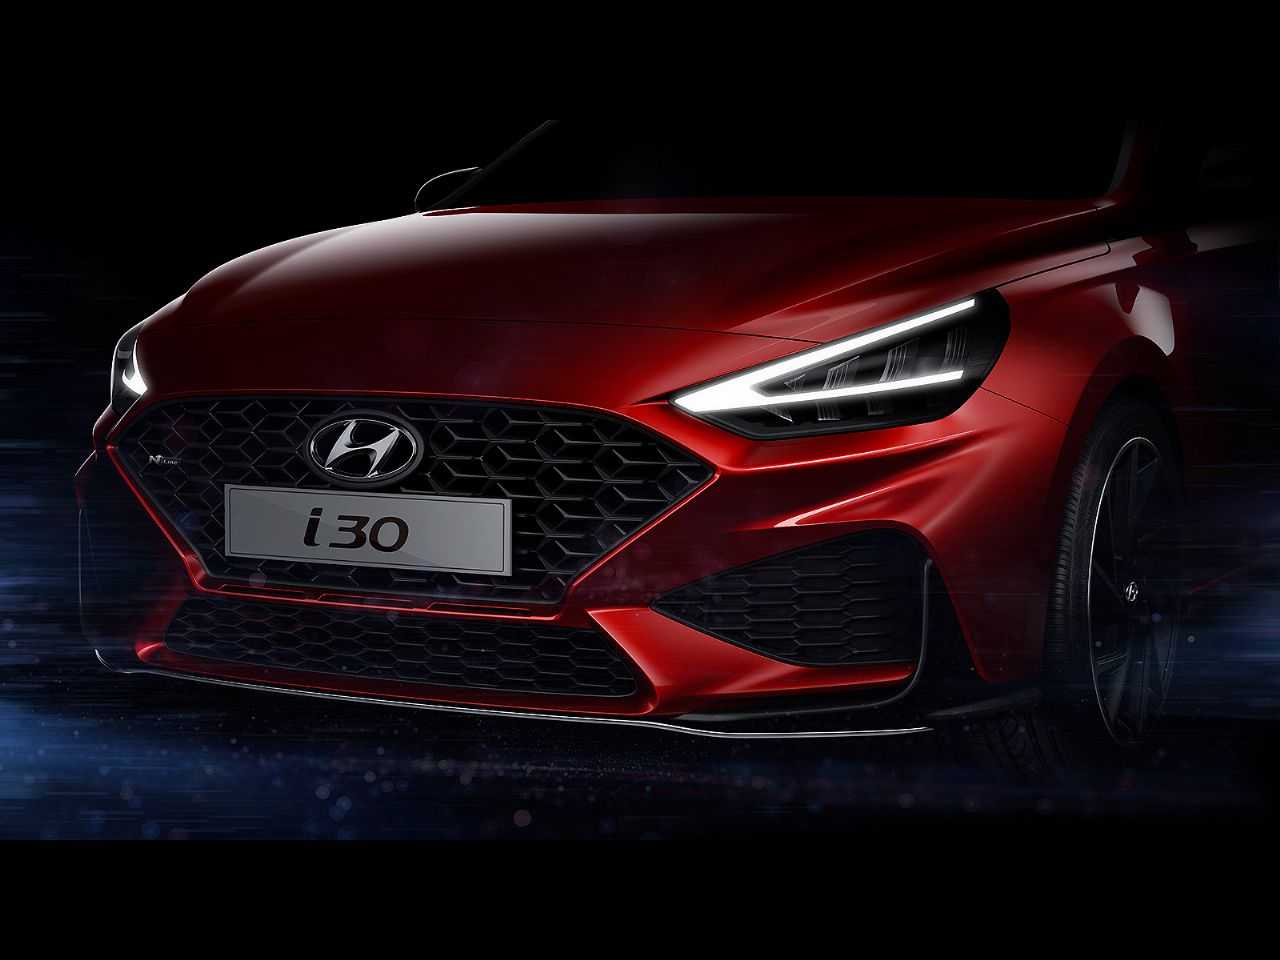 Acima o primeiro teaser da nova gerao do Hyundai i30